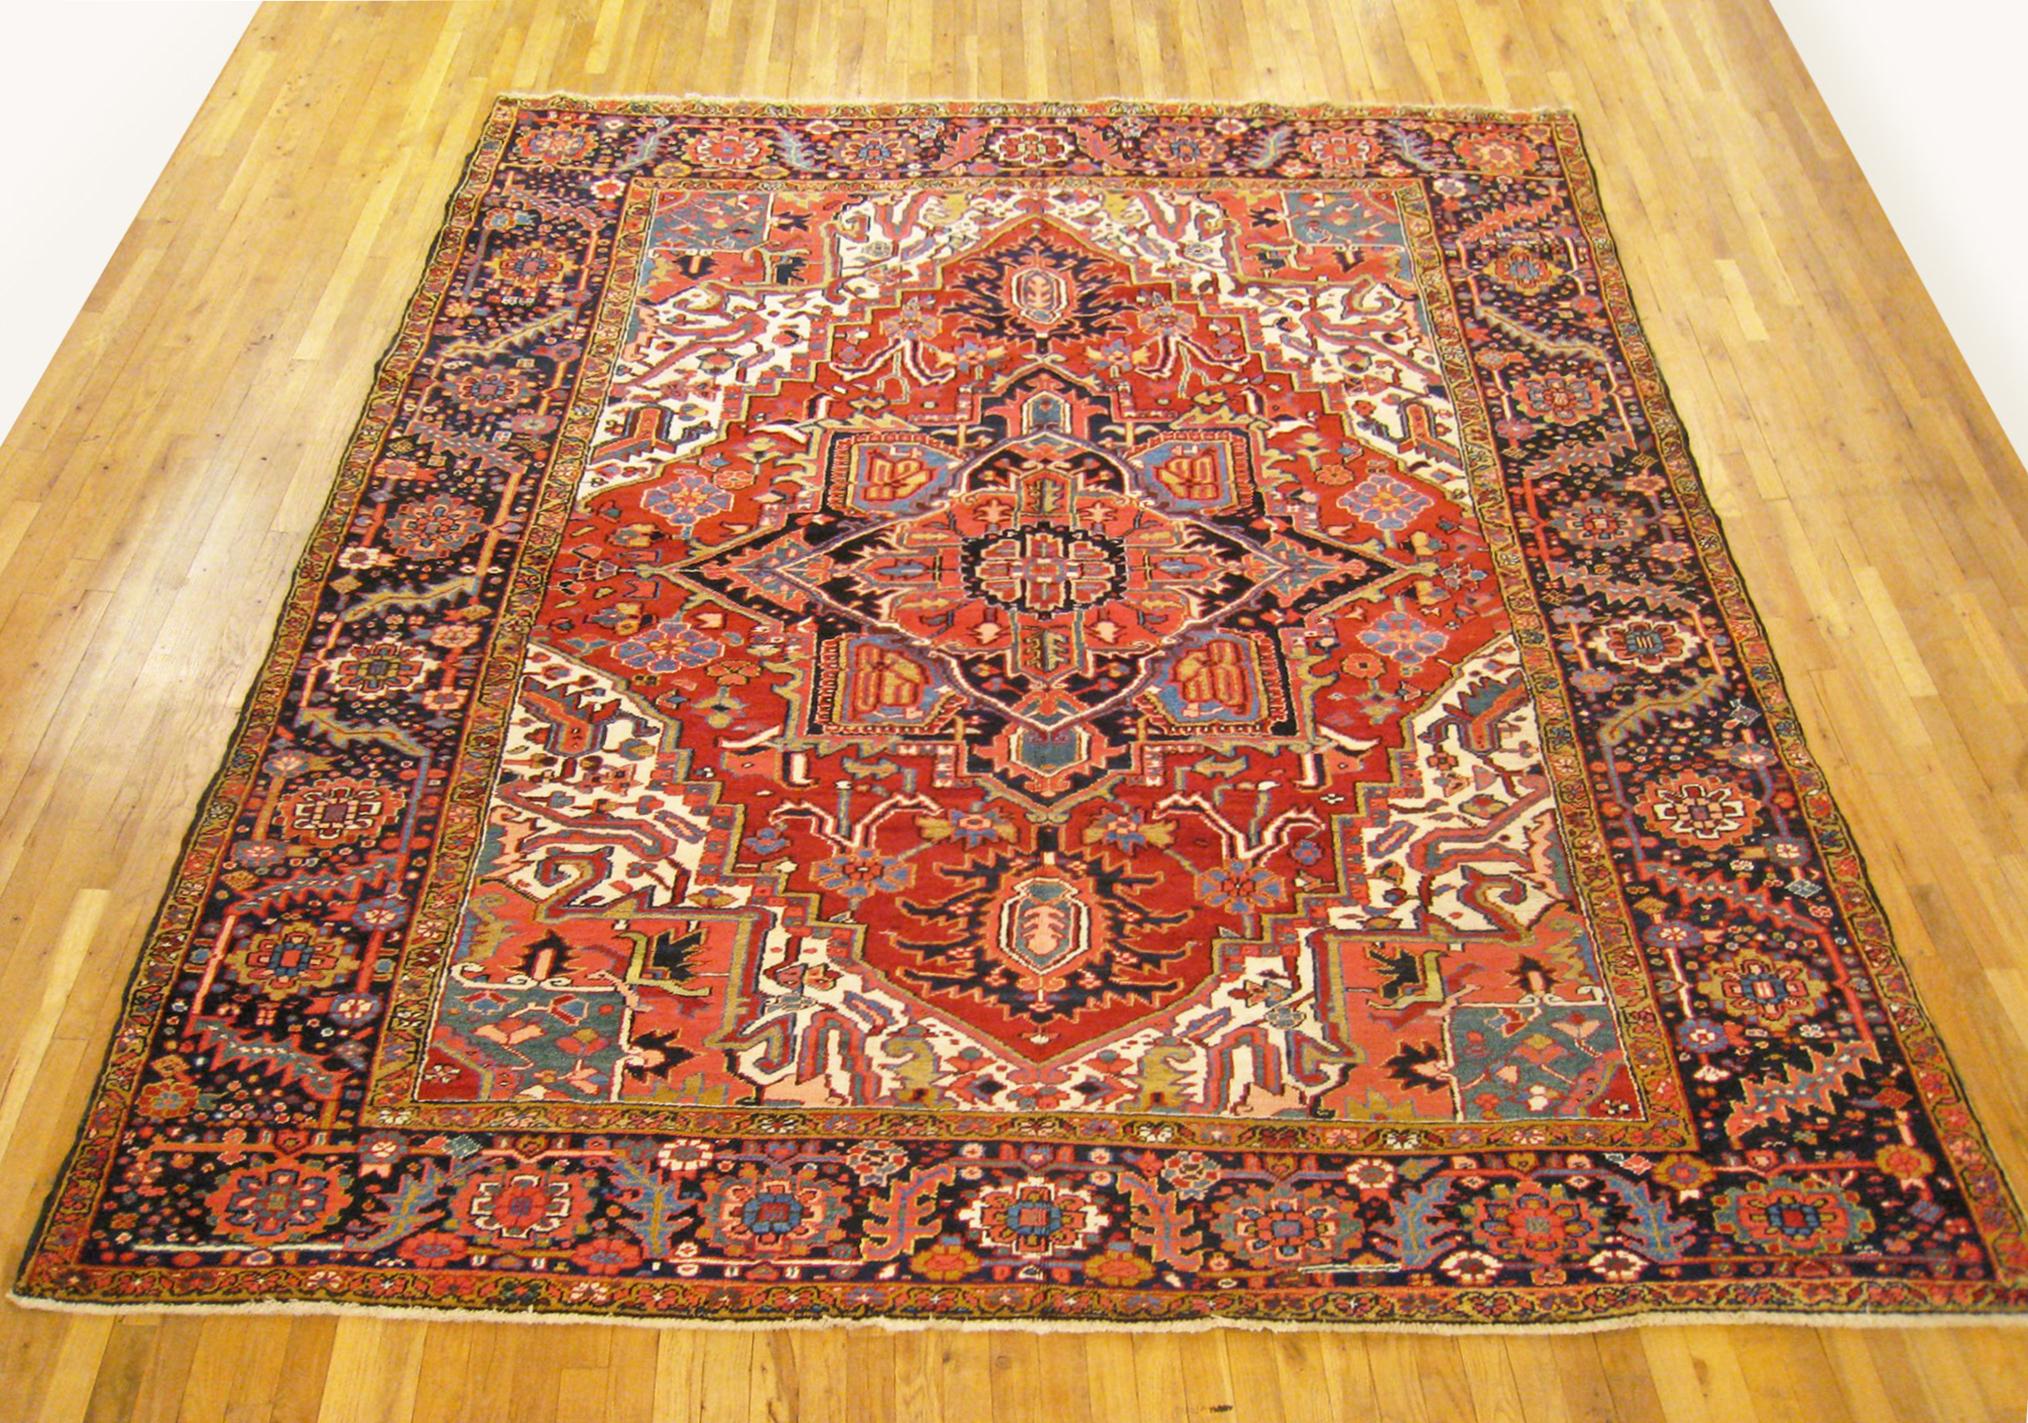 Antique Persian Heriz oriental rug, room size.

An antique Persian Heriz oriental rug, size 10'8